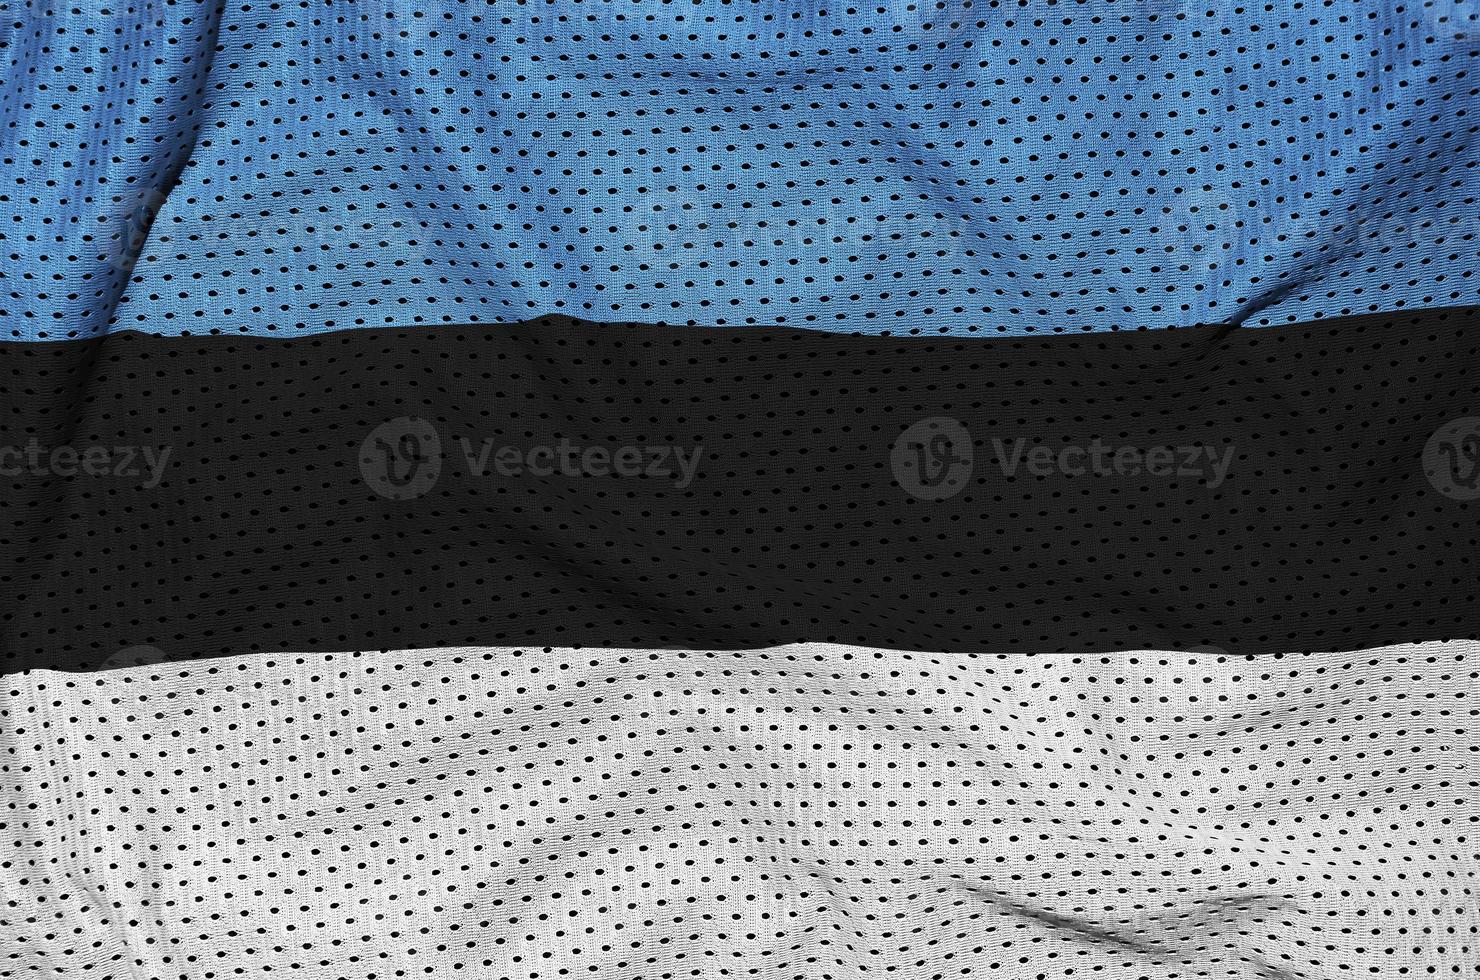 estland flagga tryckt på en polyester nylon- sportkläder maska tyg foto